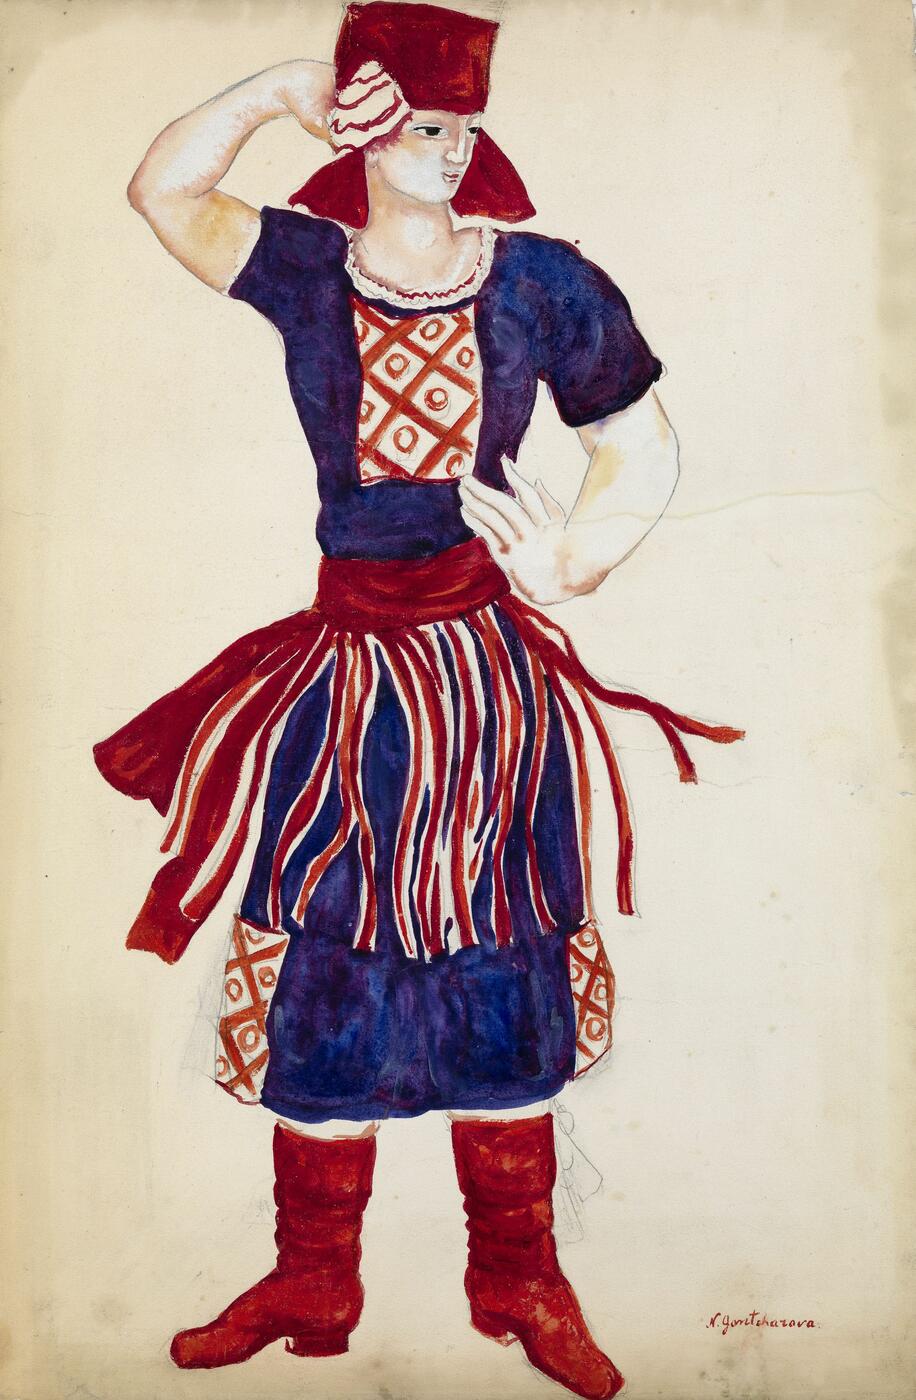 Costume Design for the "Dance of the Red Svitka" in "La Foire de Sorotchintzi", 1929